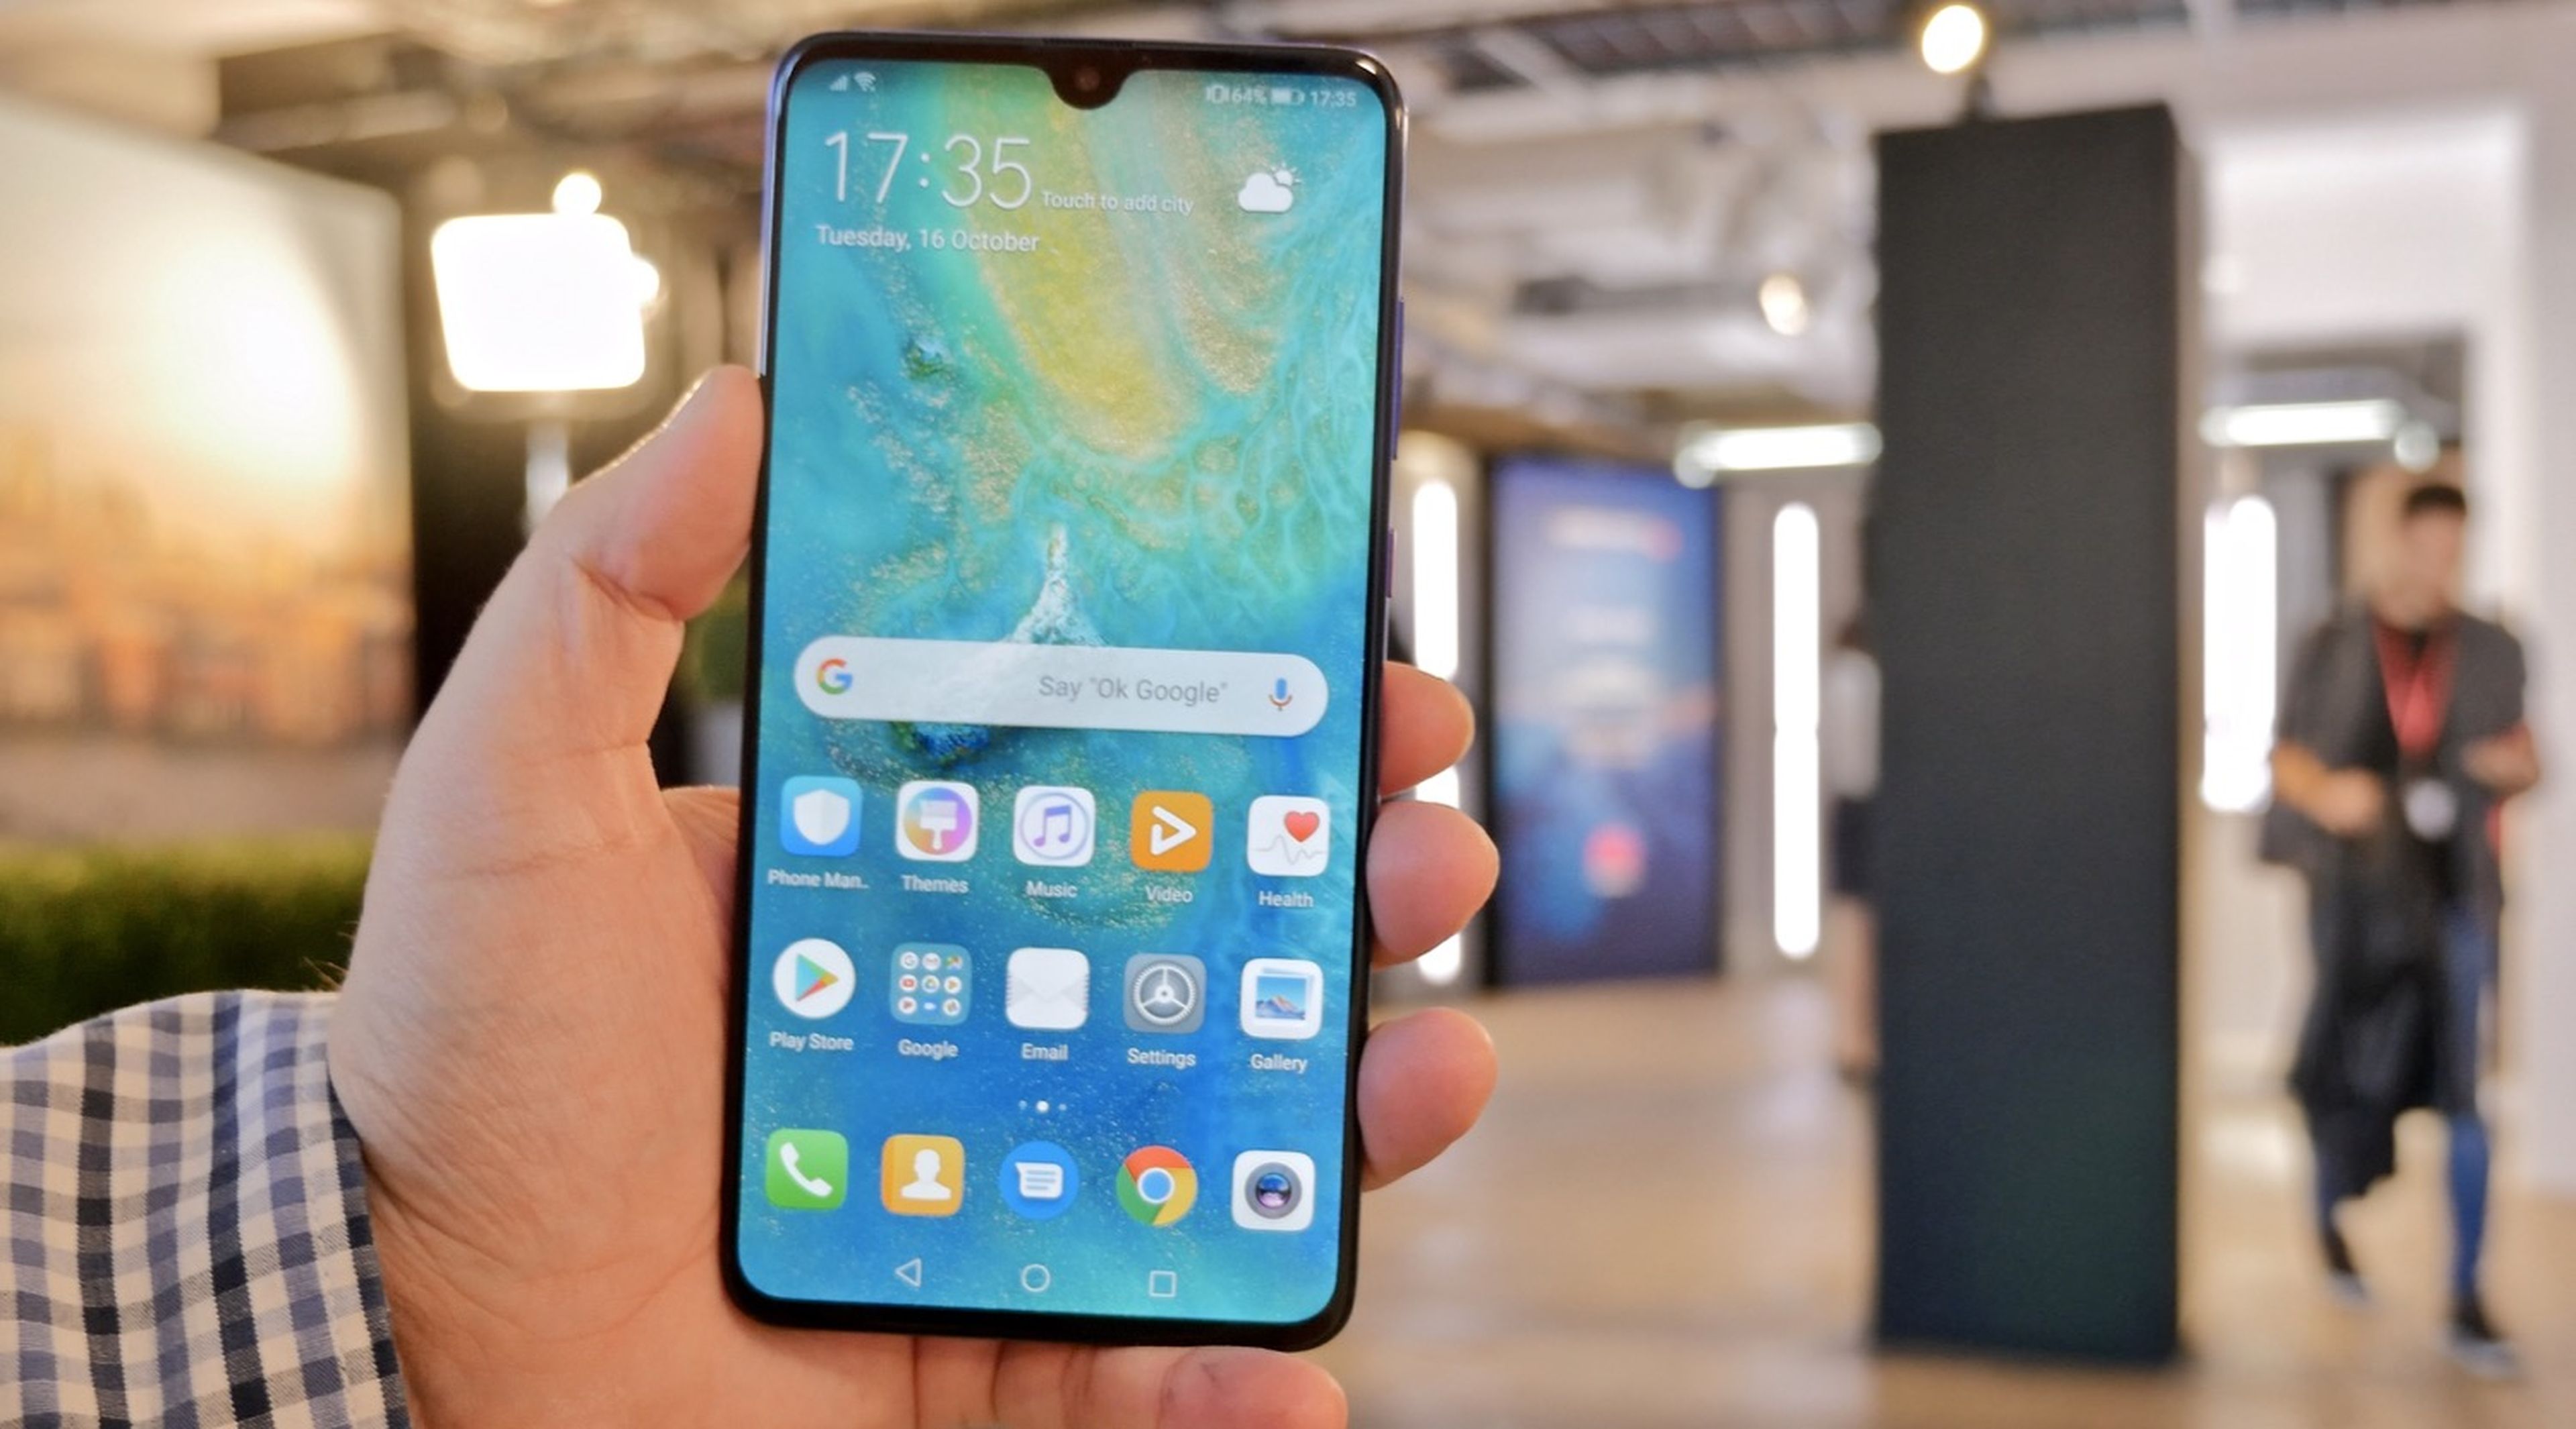 lluvia rutina Credencial Huawei Mate 20, impresiones de uno de los Android top de 2018 | Computer Hoy